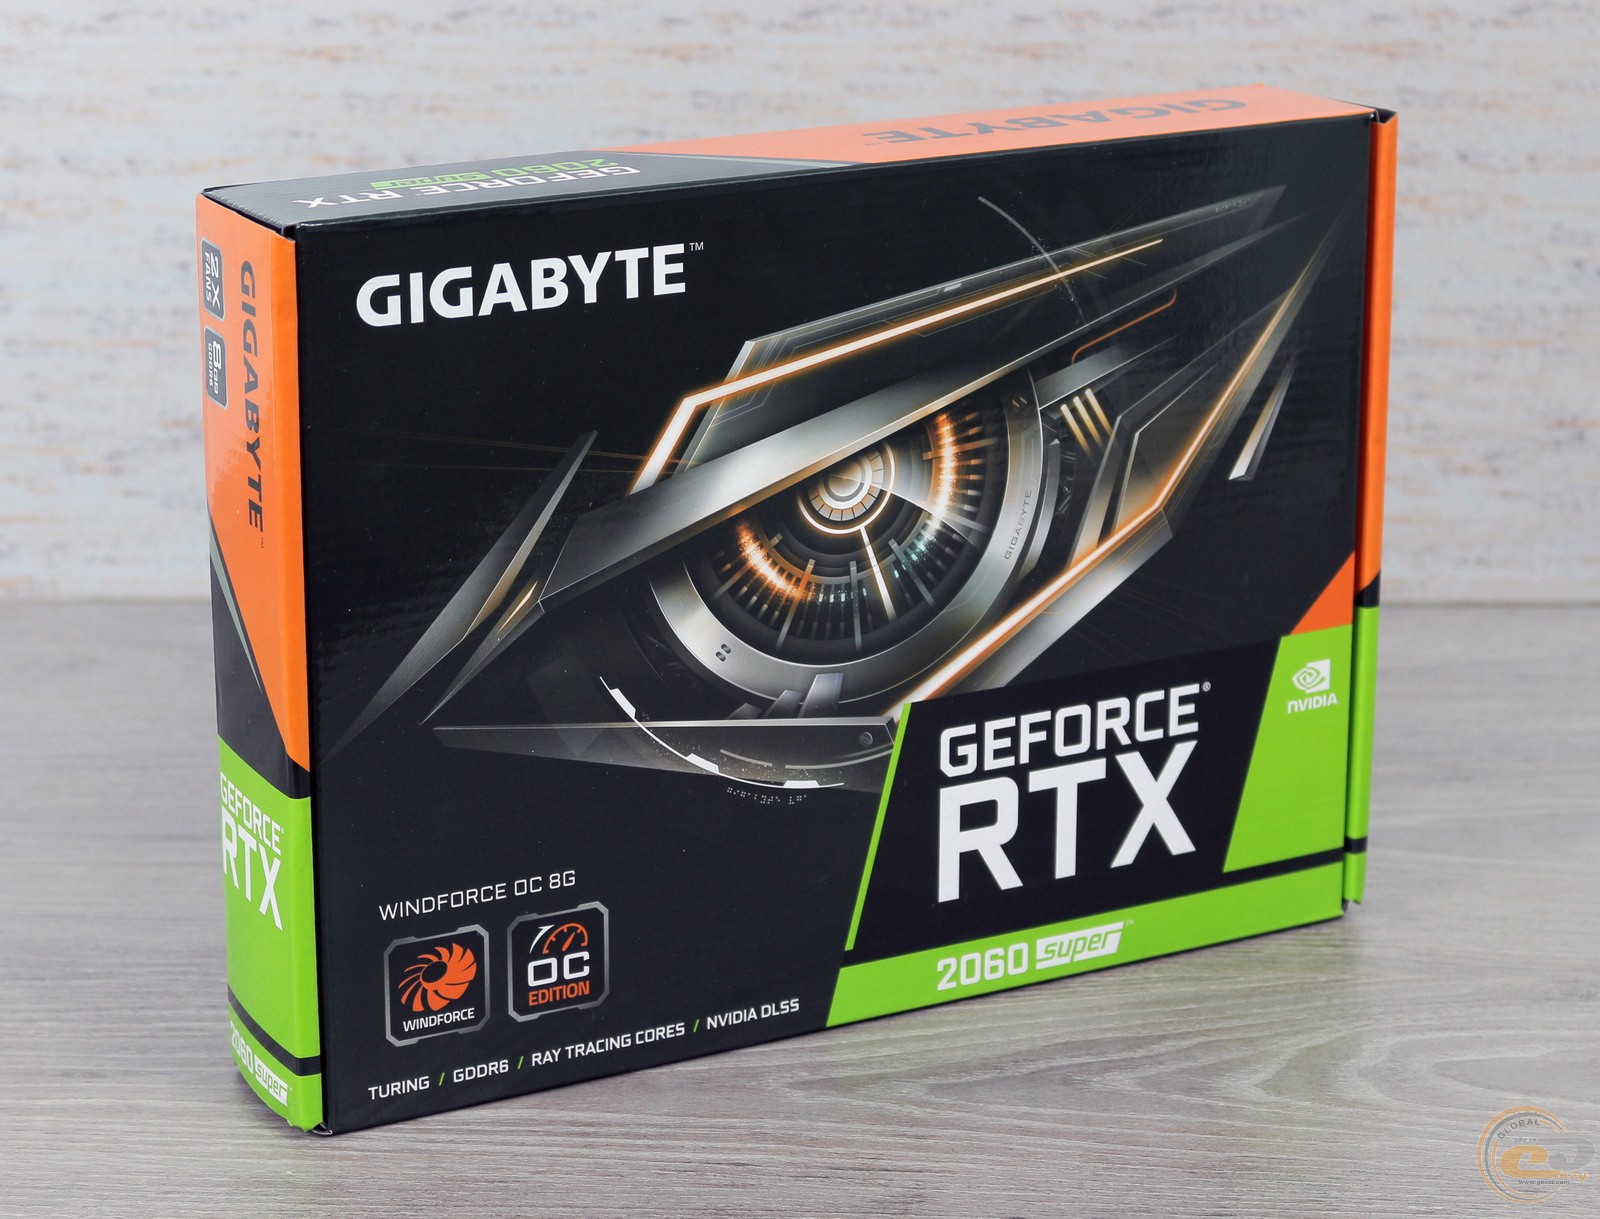 Gigabyte nvidia geforce rtx 2060. Видеокарта NVIDIA GEFORCE RTX 2060. Видеокарта GEFORCE GTX 2060 super. Видеокарта Gigabyte GEFORCE RTX 2060 6 GB. RTX 2060 super Gigabyte.